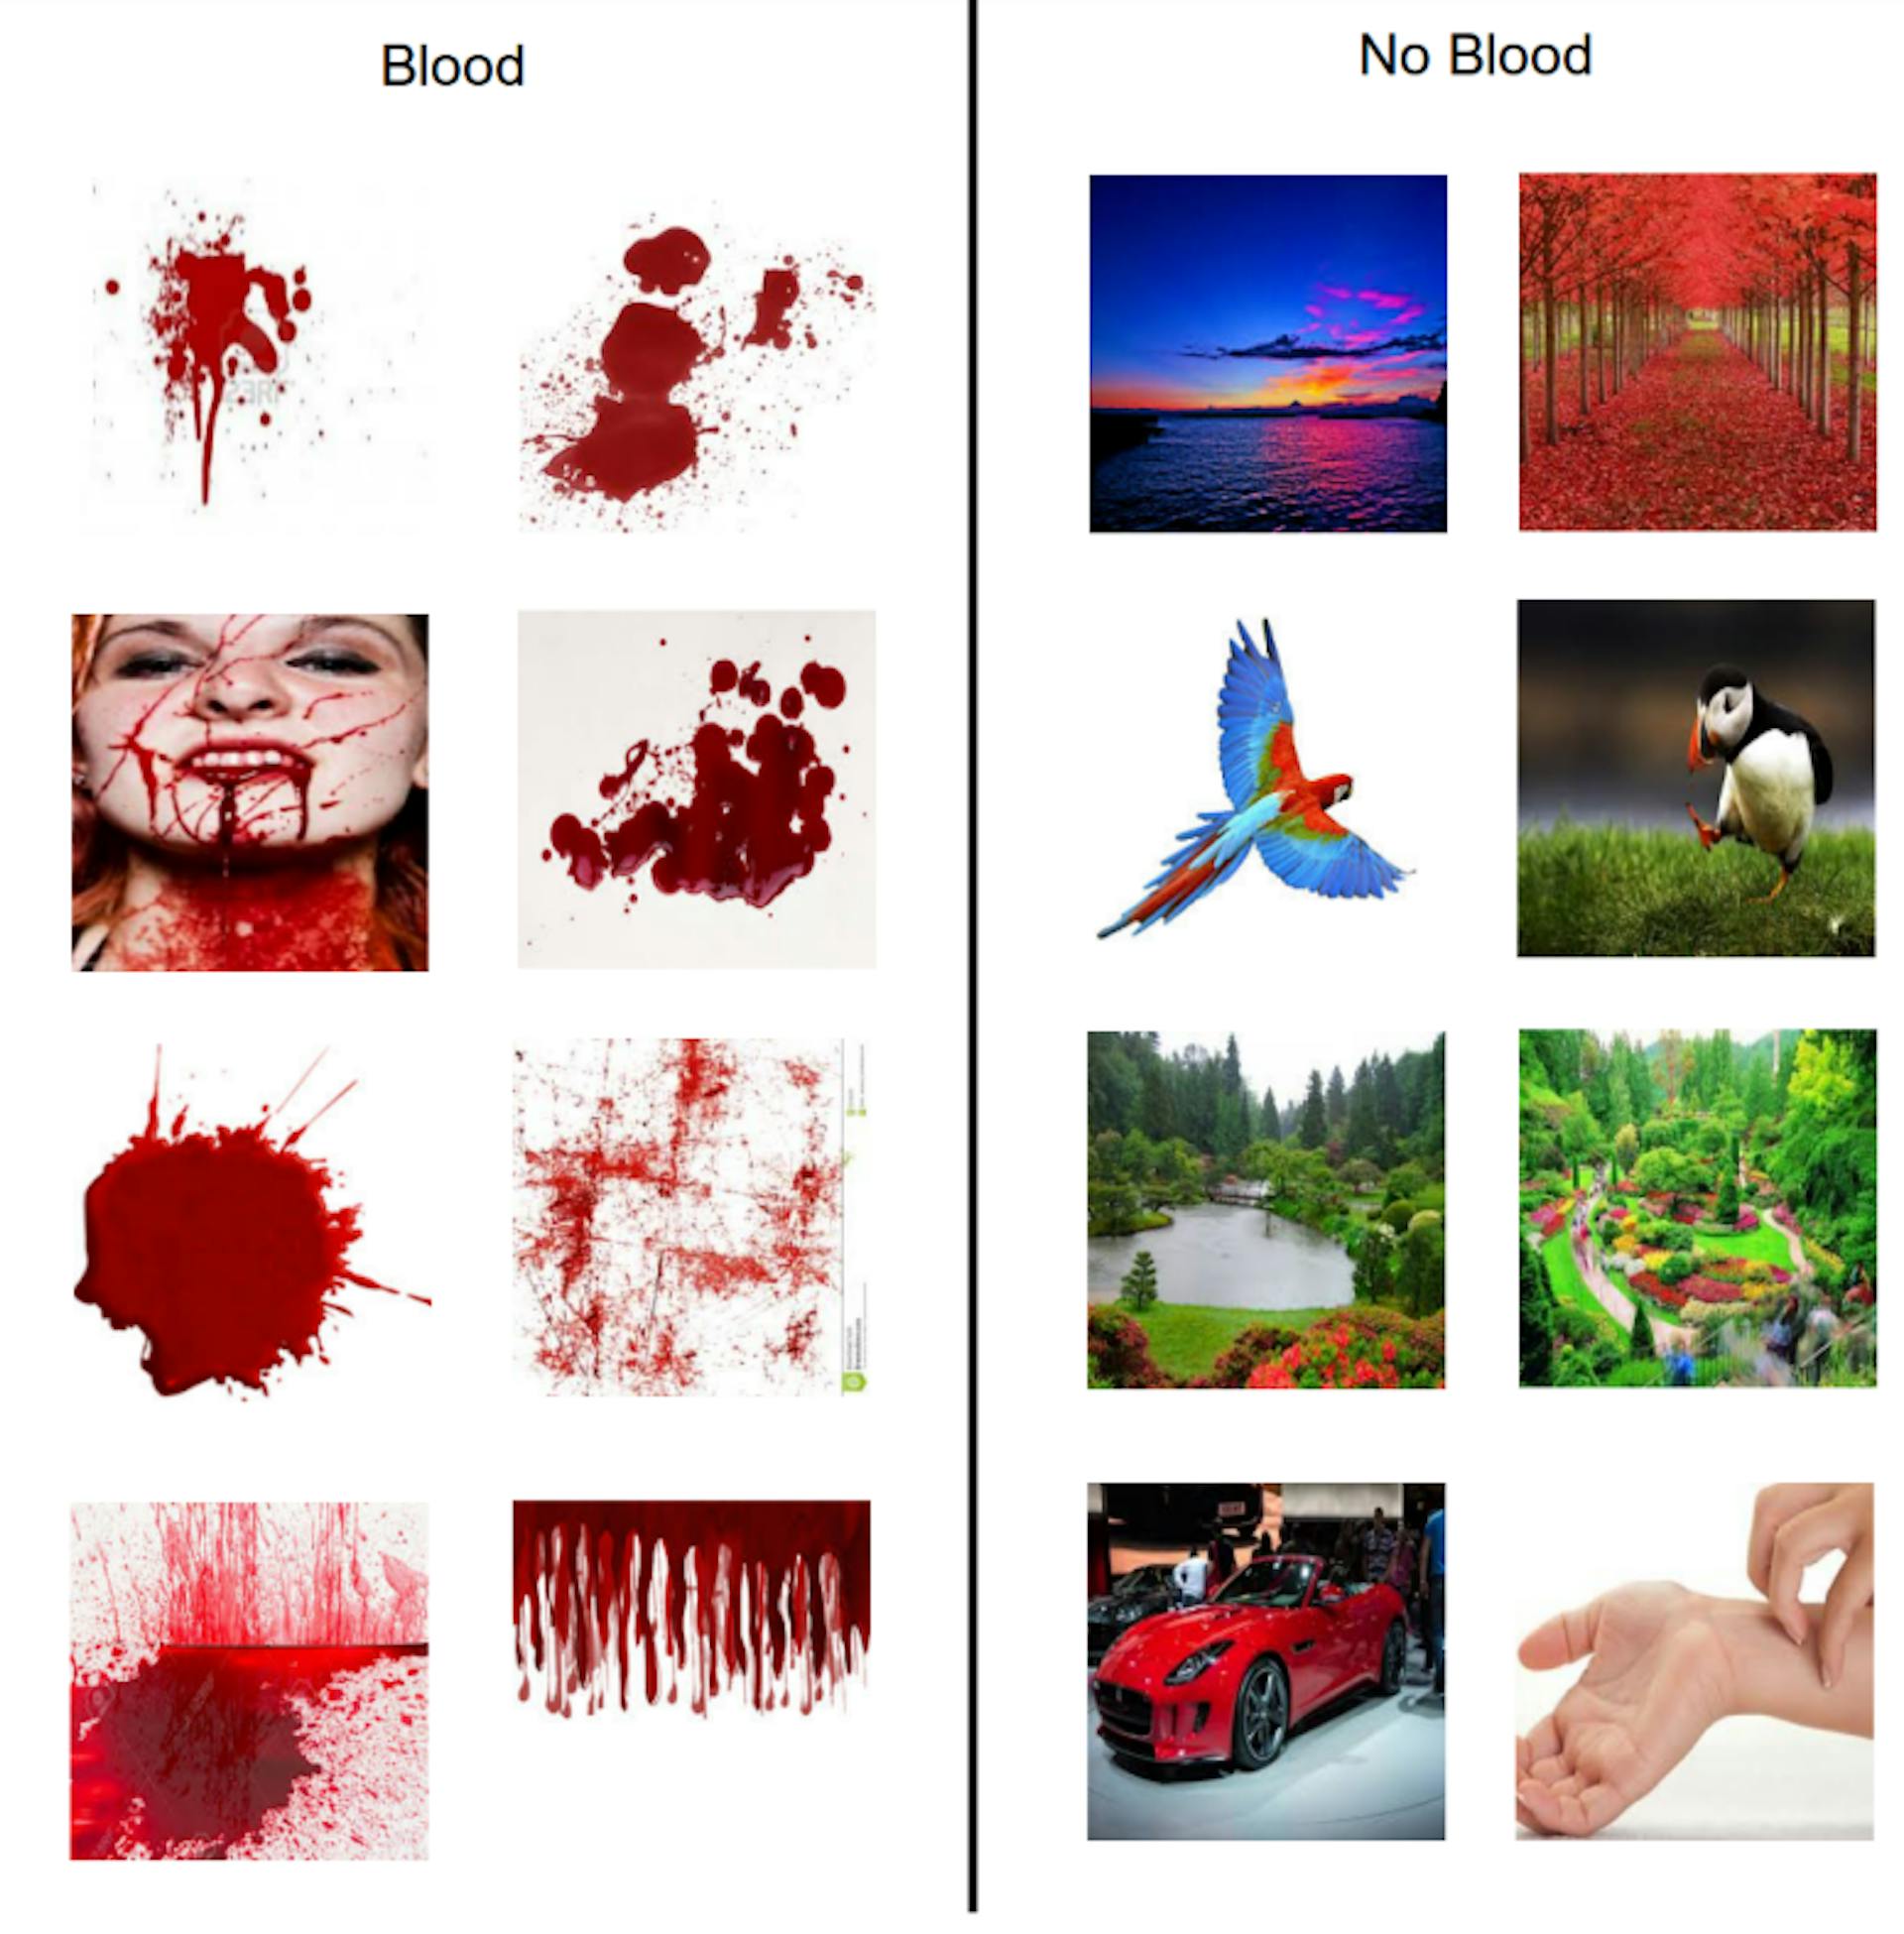 図 3.3: 血液モデルと非血液モデルを生成するために Google からダウンロードしたサンプル画像を示す図。